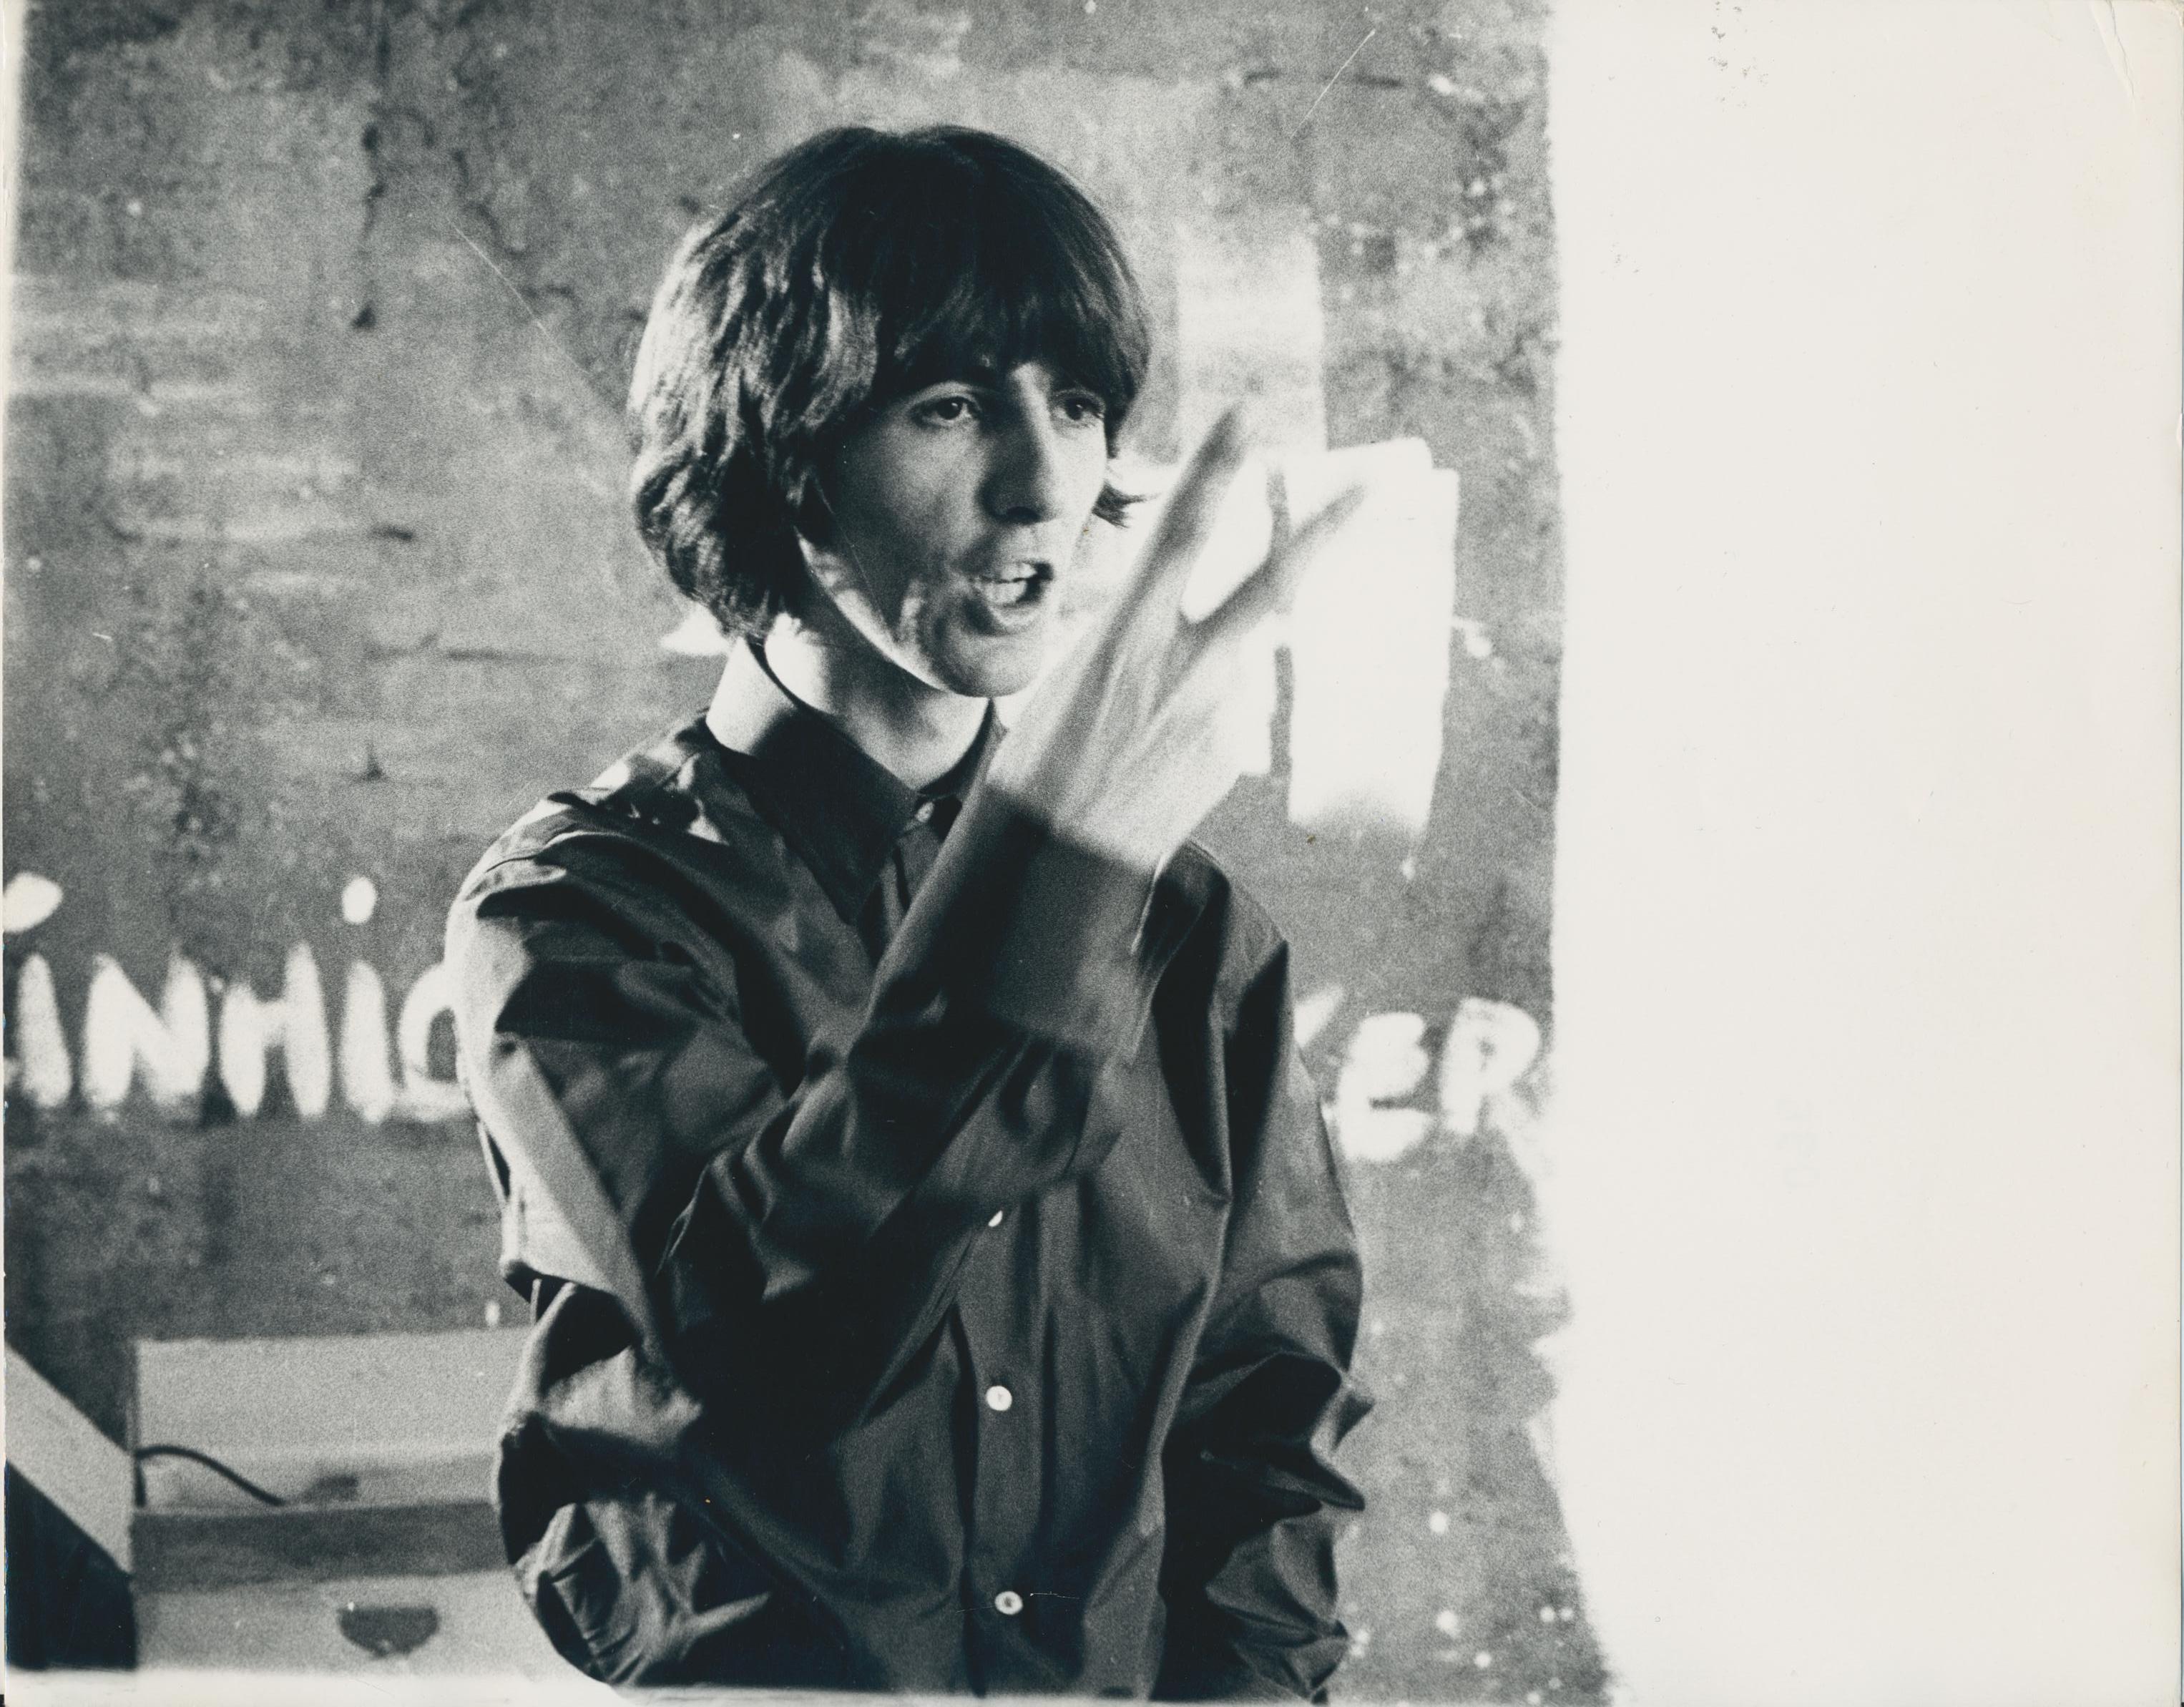 Black and White Photograph Martin Weaver - Photographie noire et blanche de George Harrison, années 1970, 20,3 x 25,9 cm